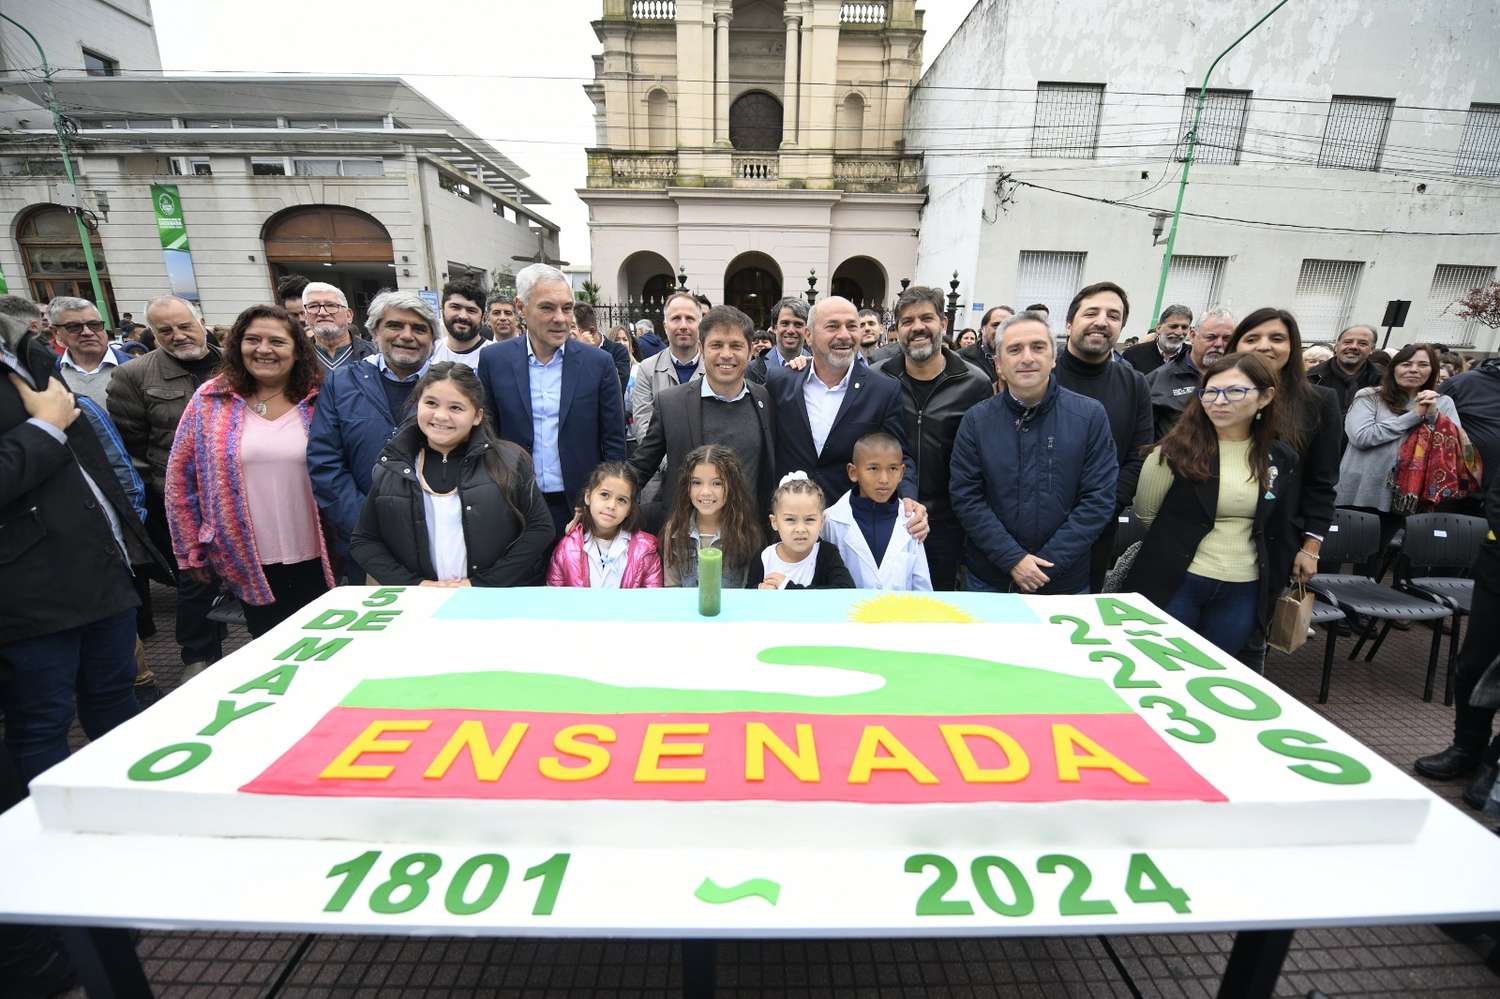 Ensenada celebró su Aniversario 223° con presencia del Gobernador e intendentes de la Región Capital